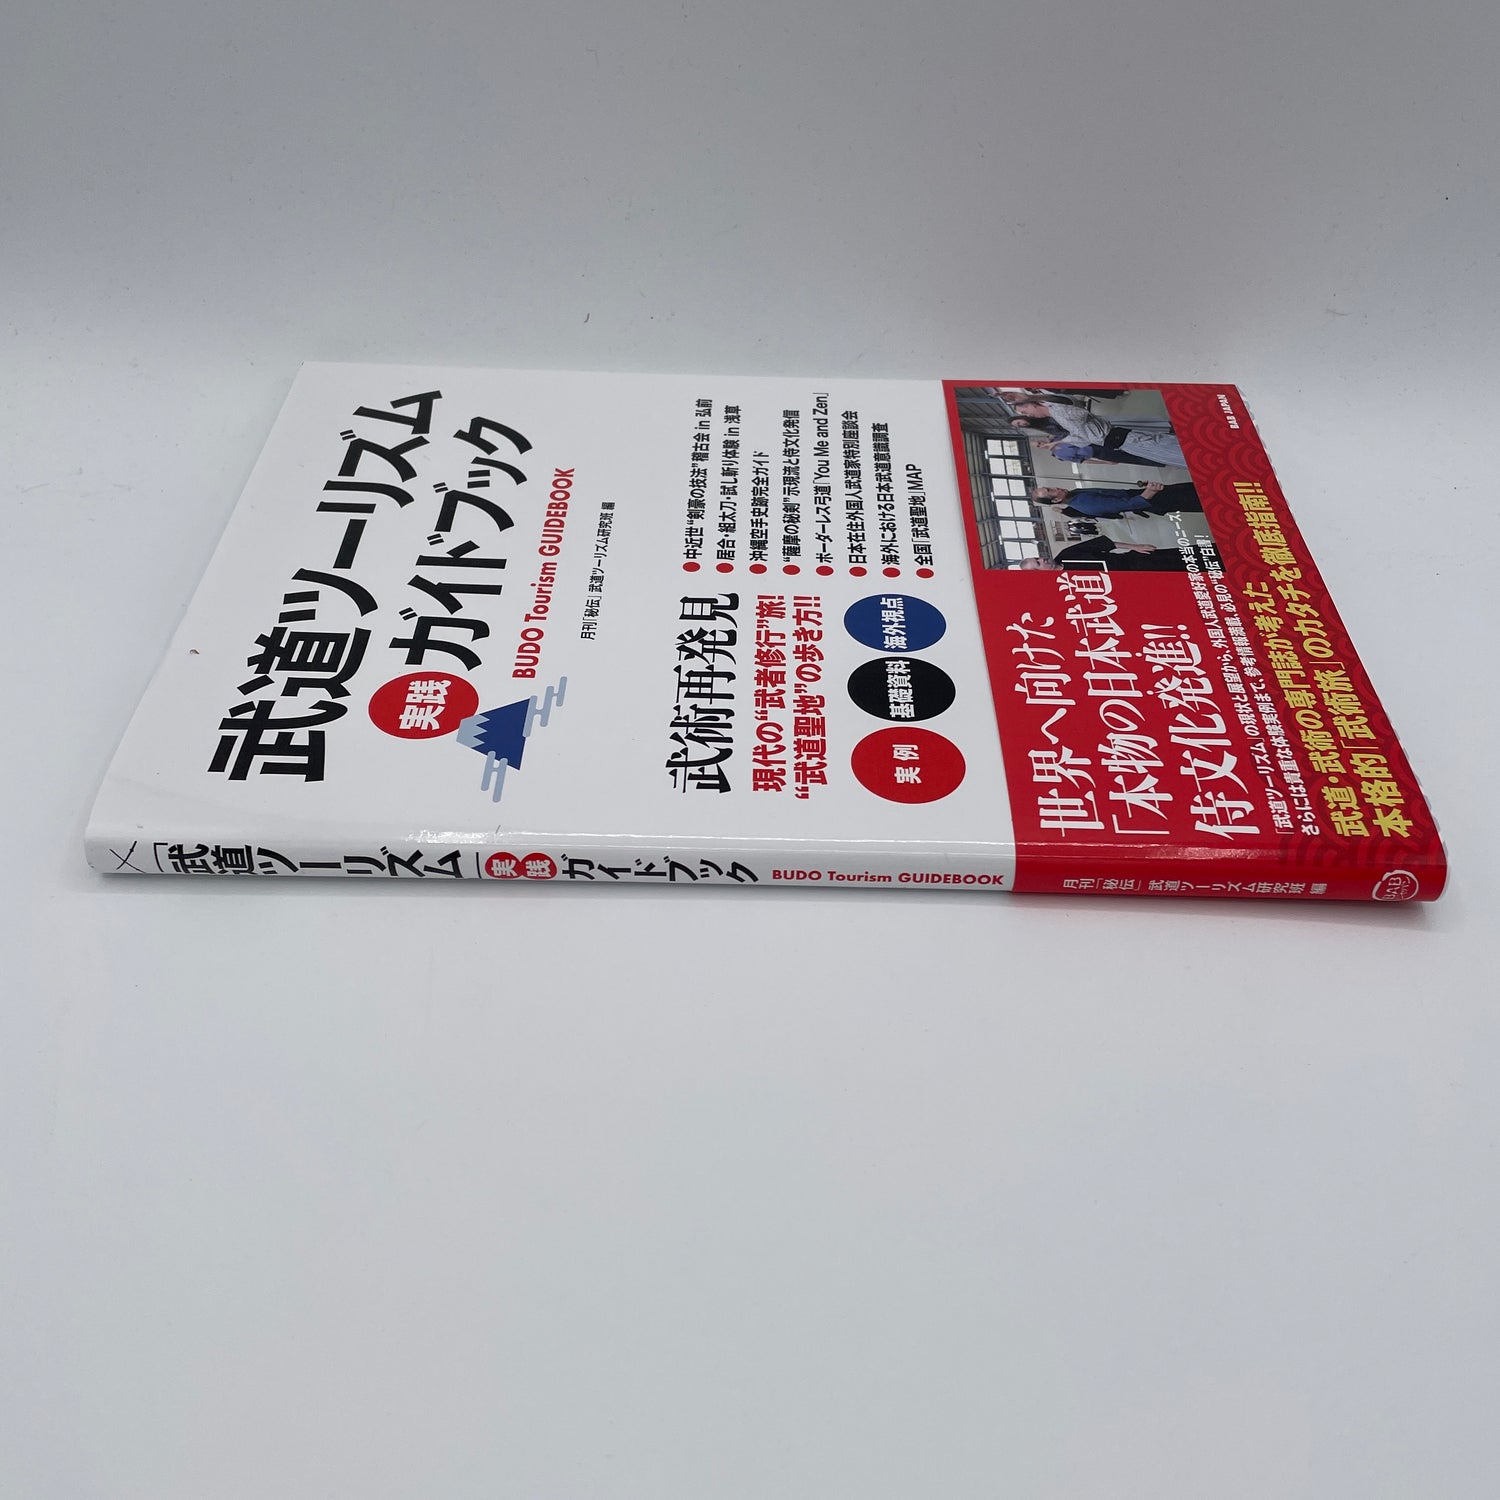 武道ツーリズム・イン・ジャパン ガイドブック